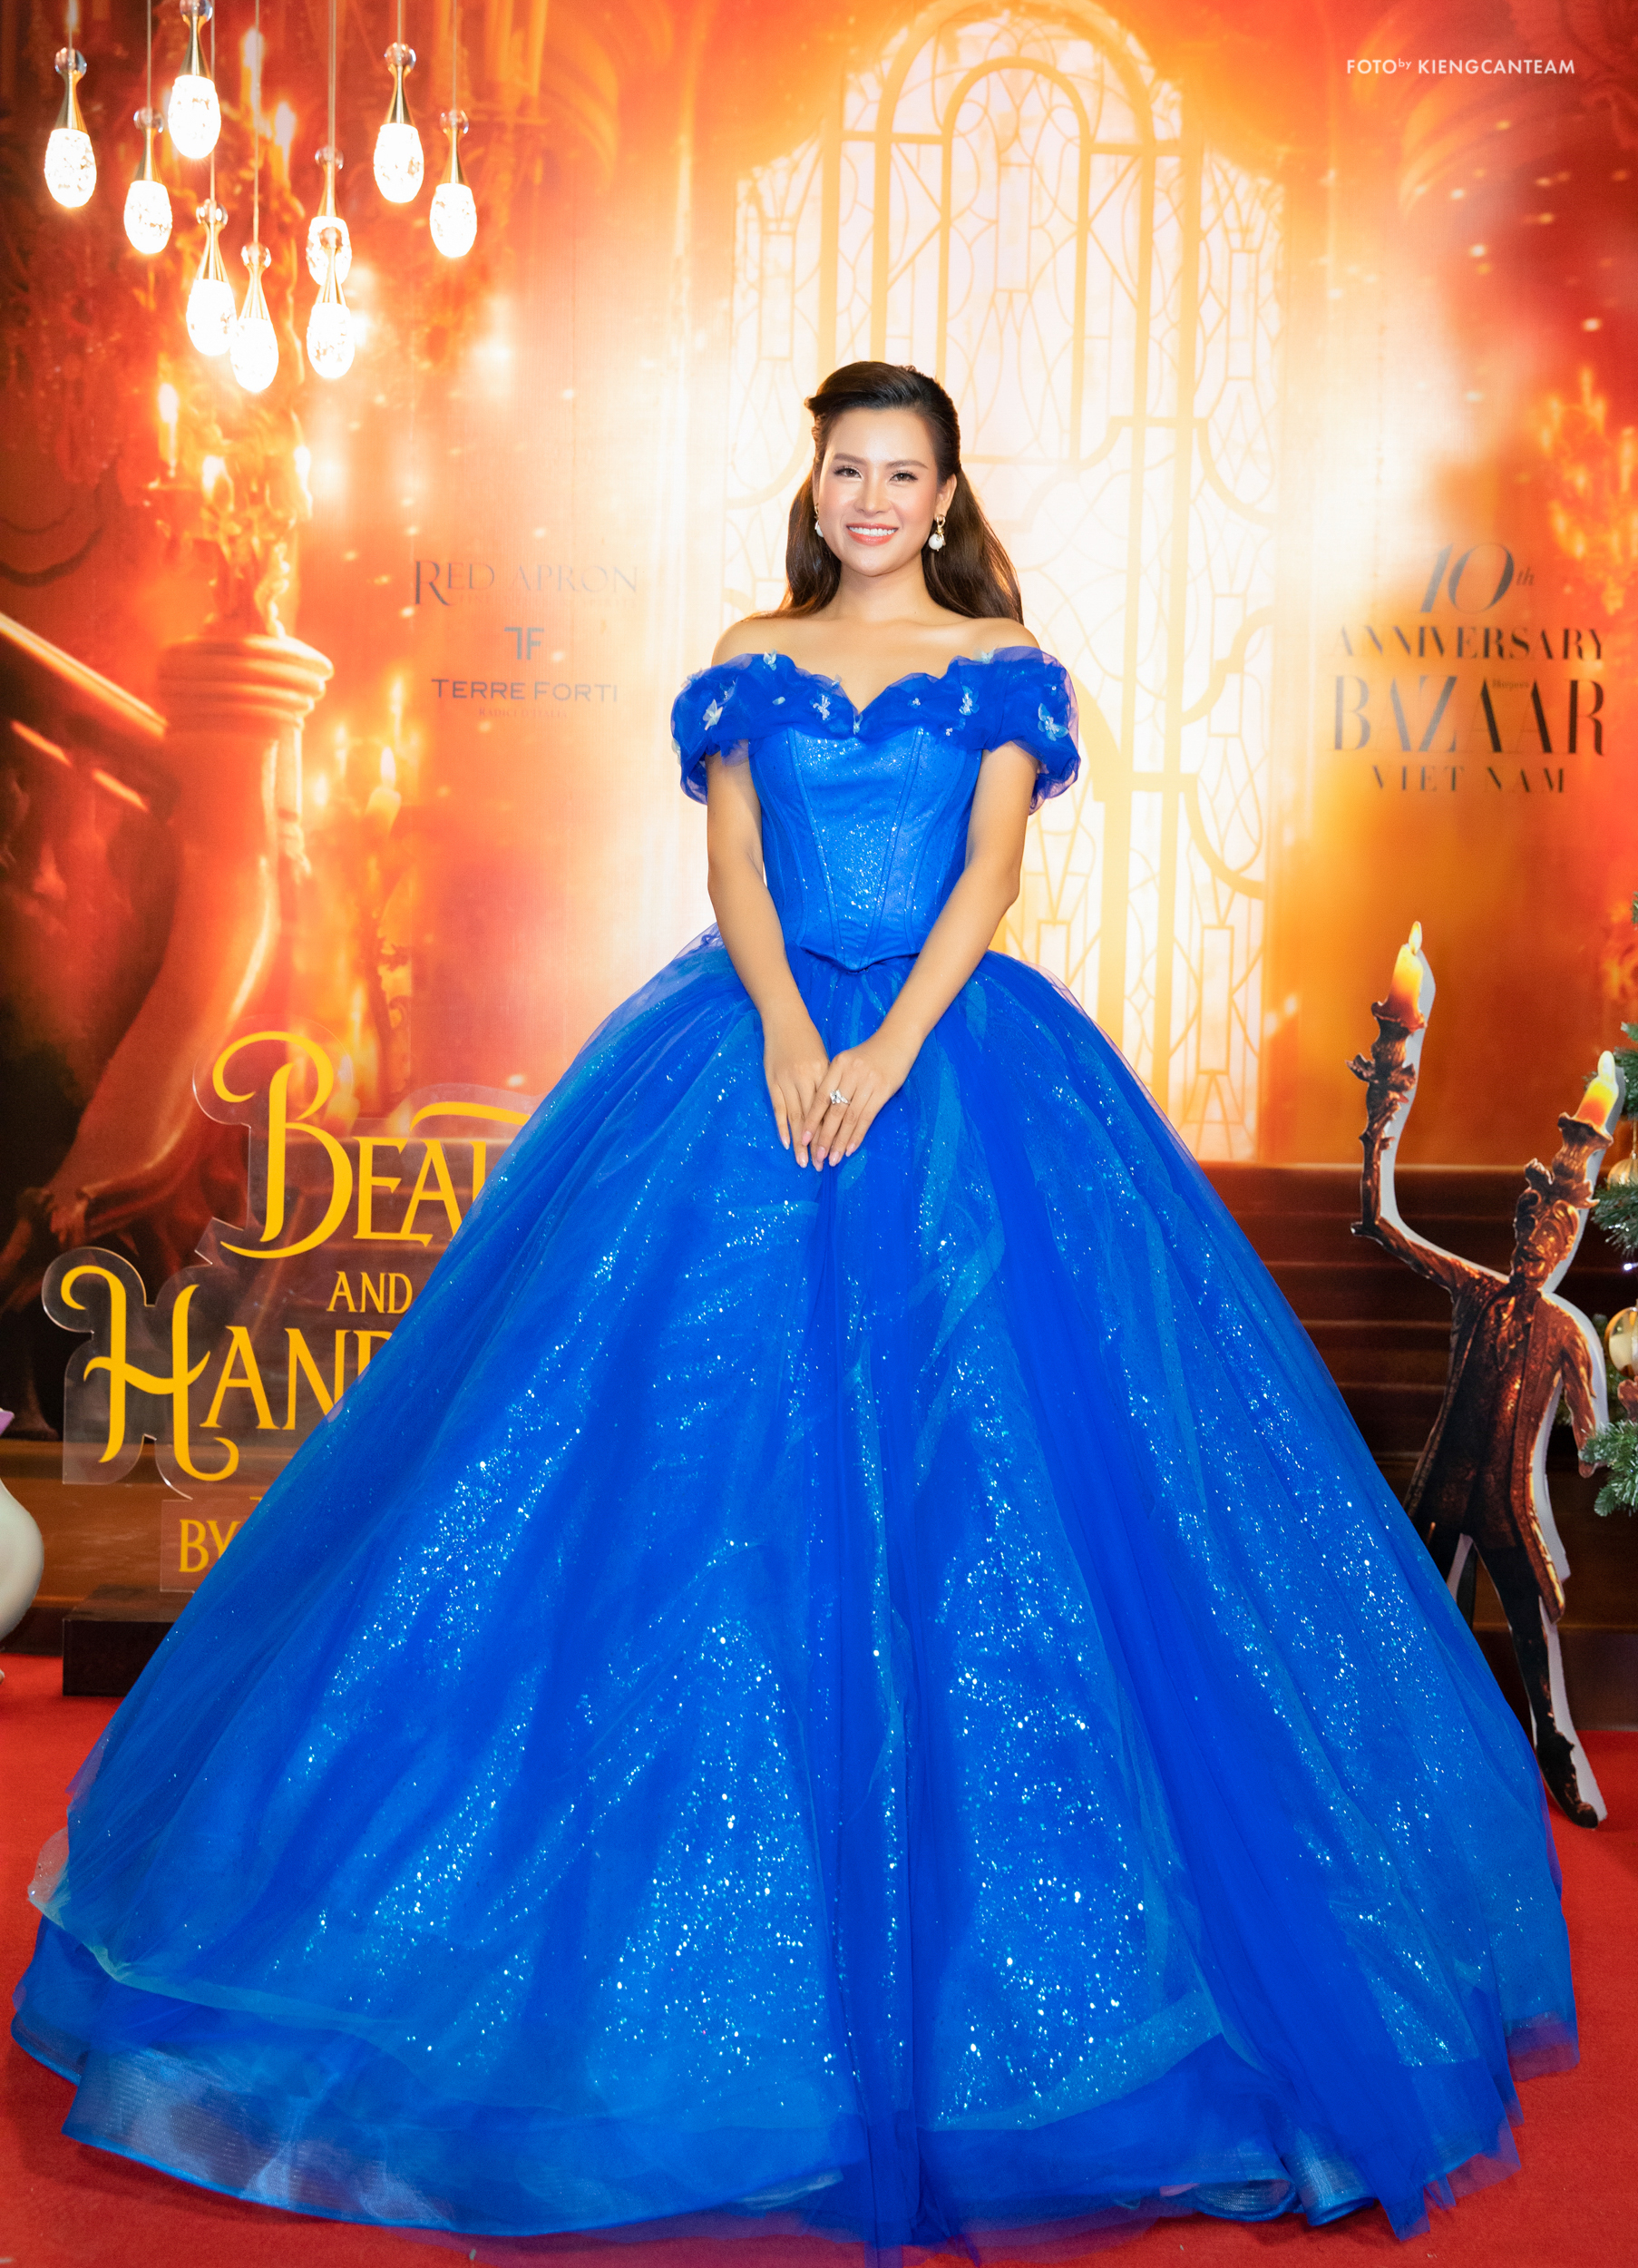 Chiếc váy đầm xanh lộng lẫy giúp Hoa Thái tựa như nàng công chúa bước ra từ câu chuyện cổ tích.